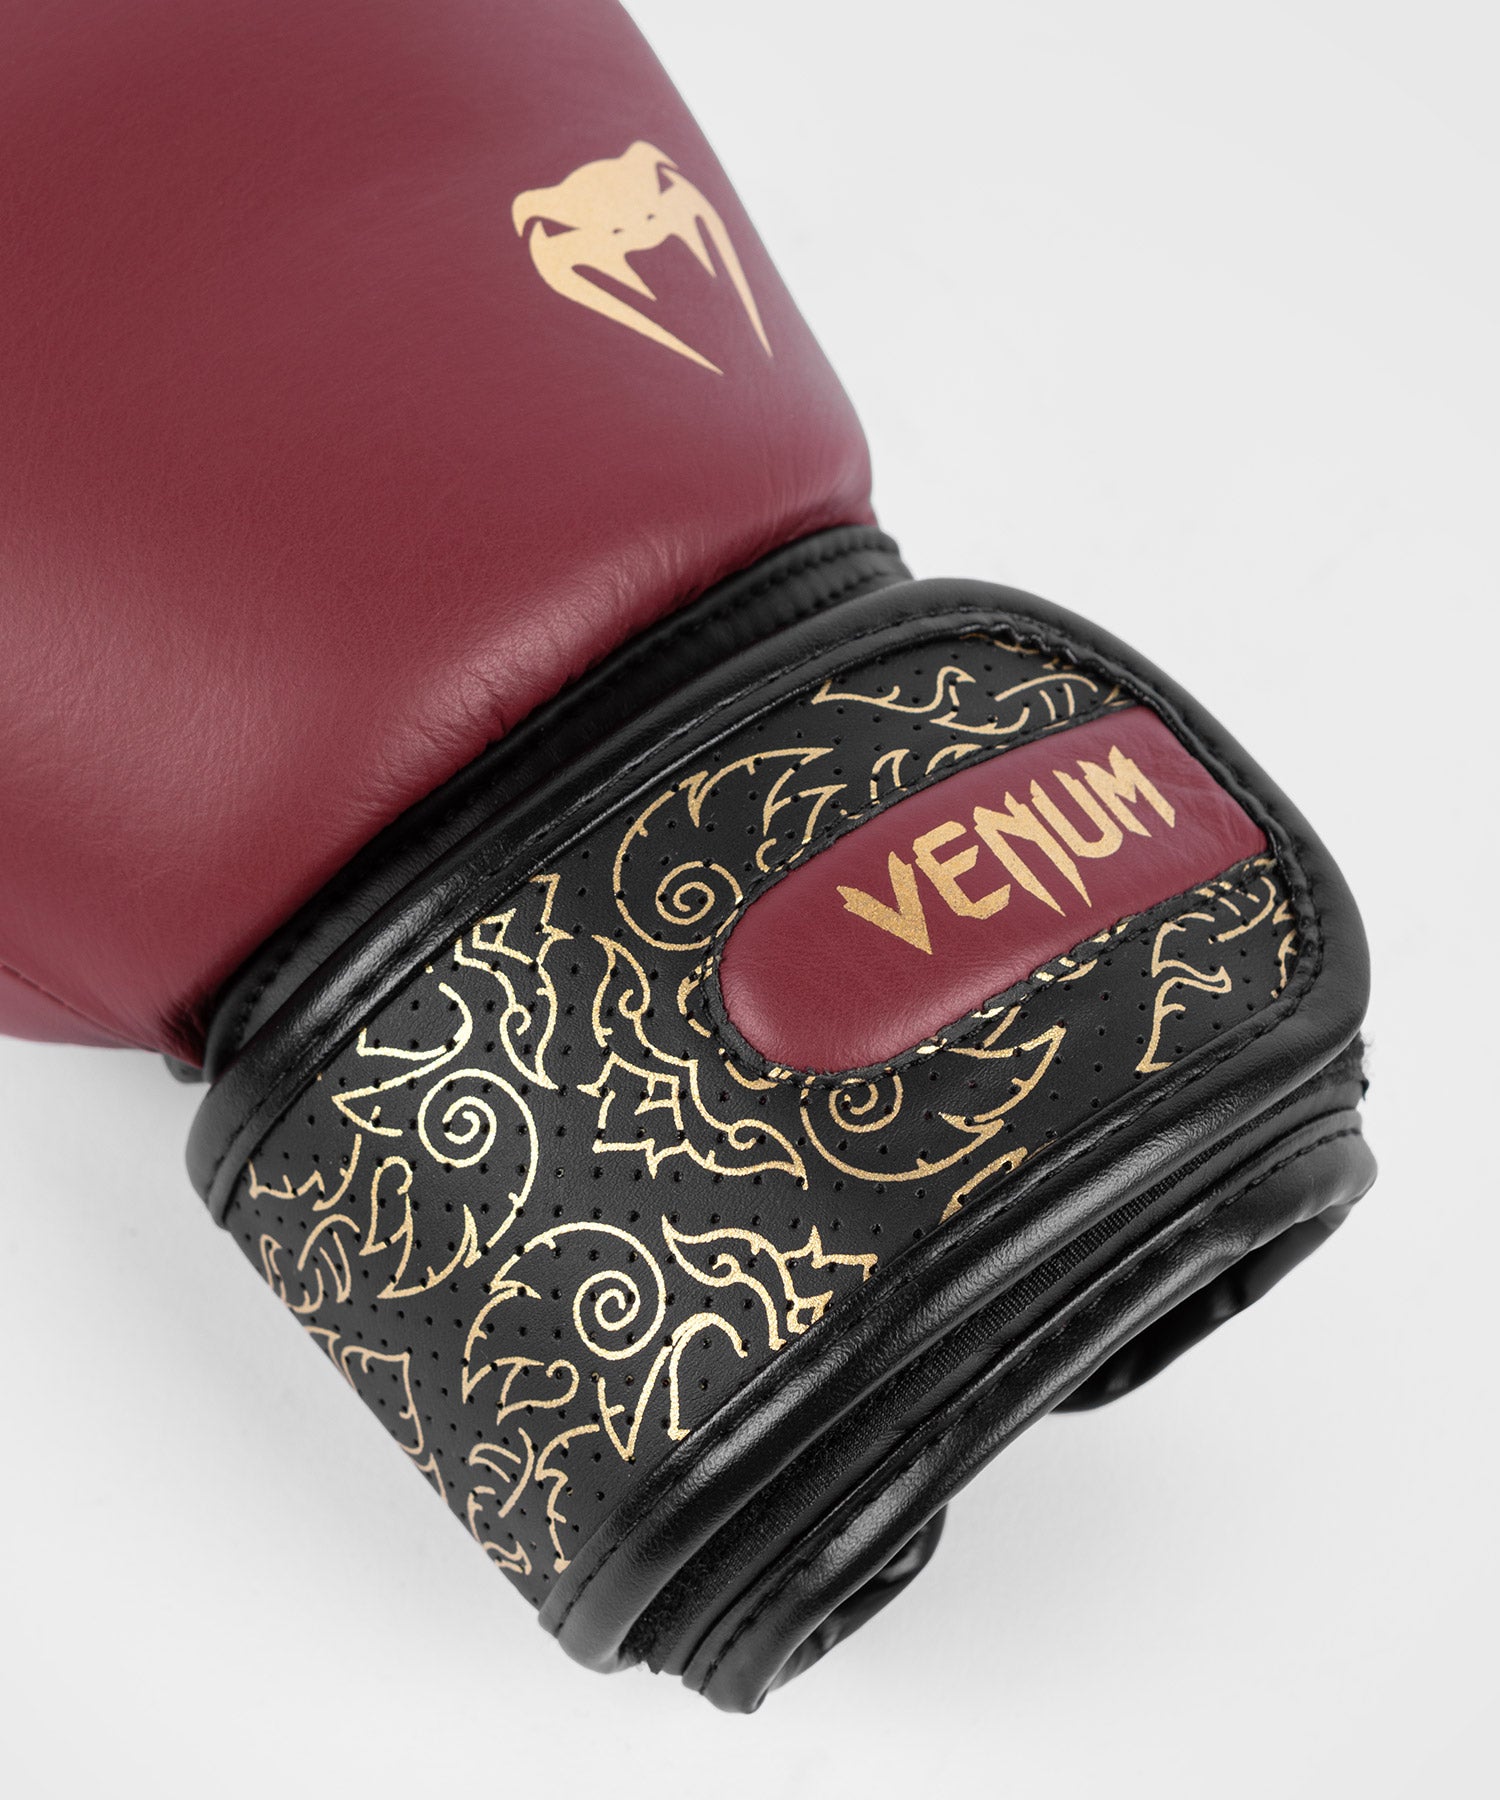 Gants de boxe Venum Power 2.0 - Rouge Bordeaux/Noir